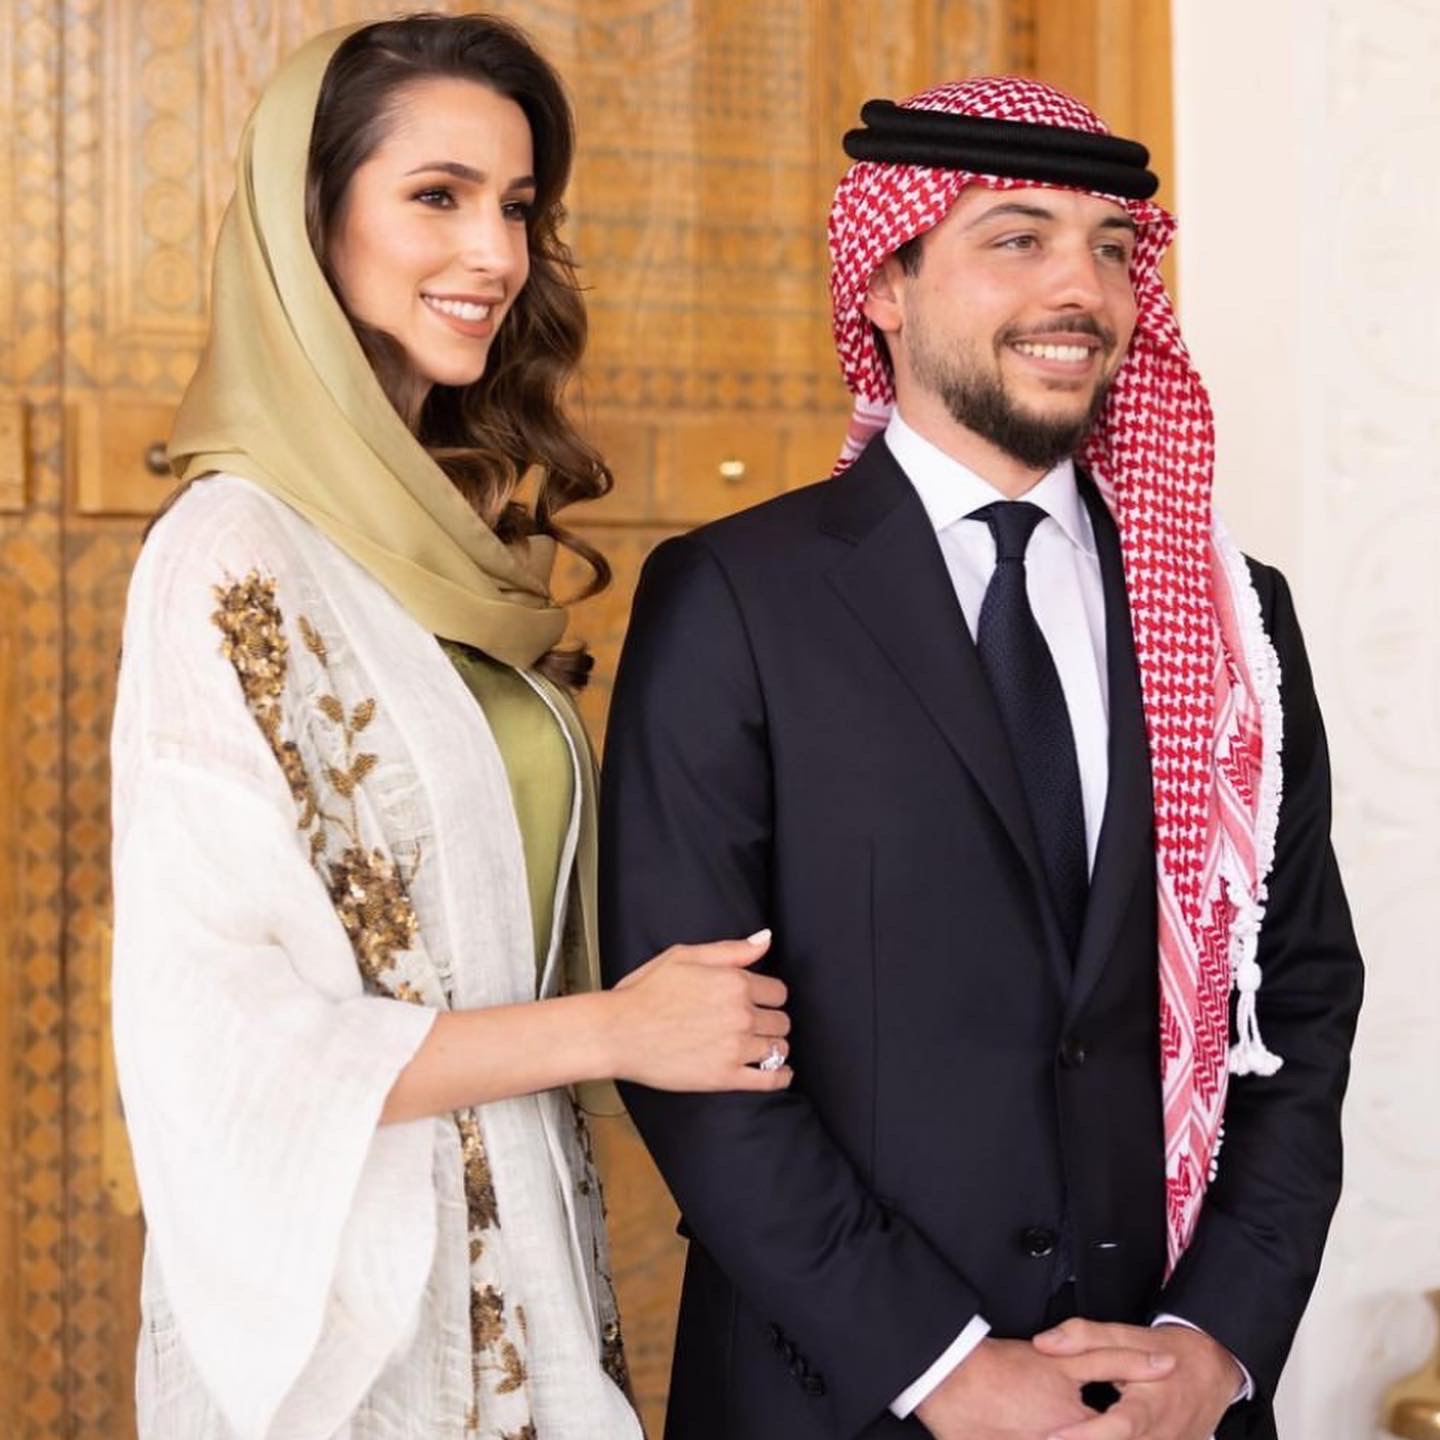 Jordaania kroonprints Hussein bin Abdullah II kihlus